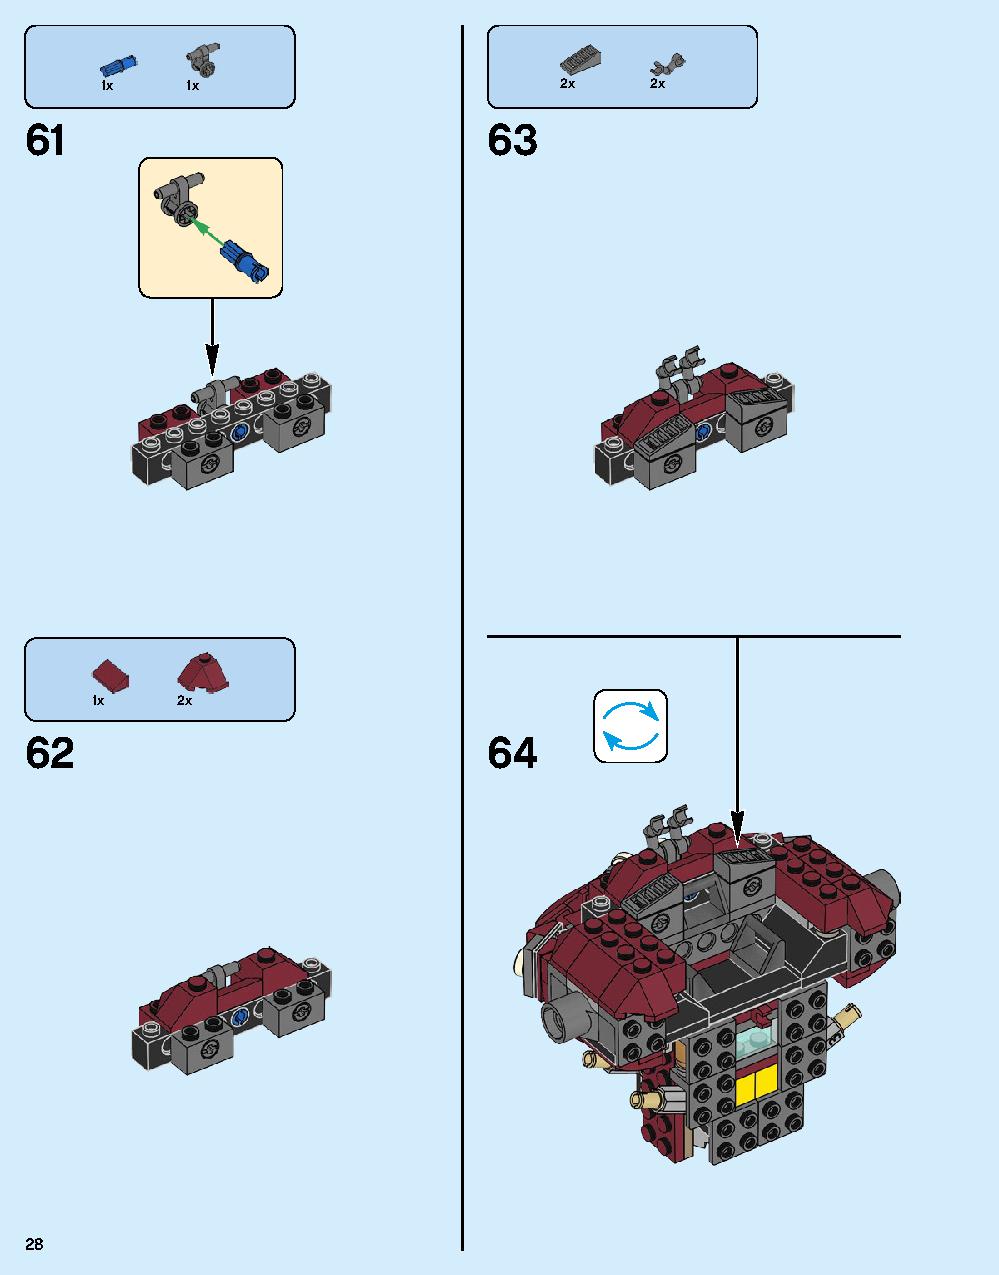 ハルクバスター：ウルトロン・エディション 76105 レゴの商品情報 レゴの説明書・組立方法 28 page